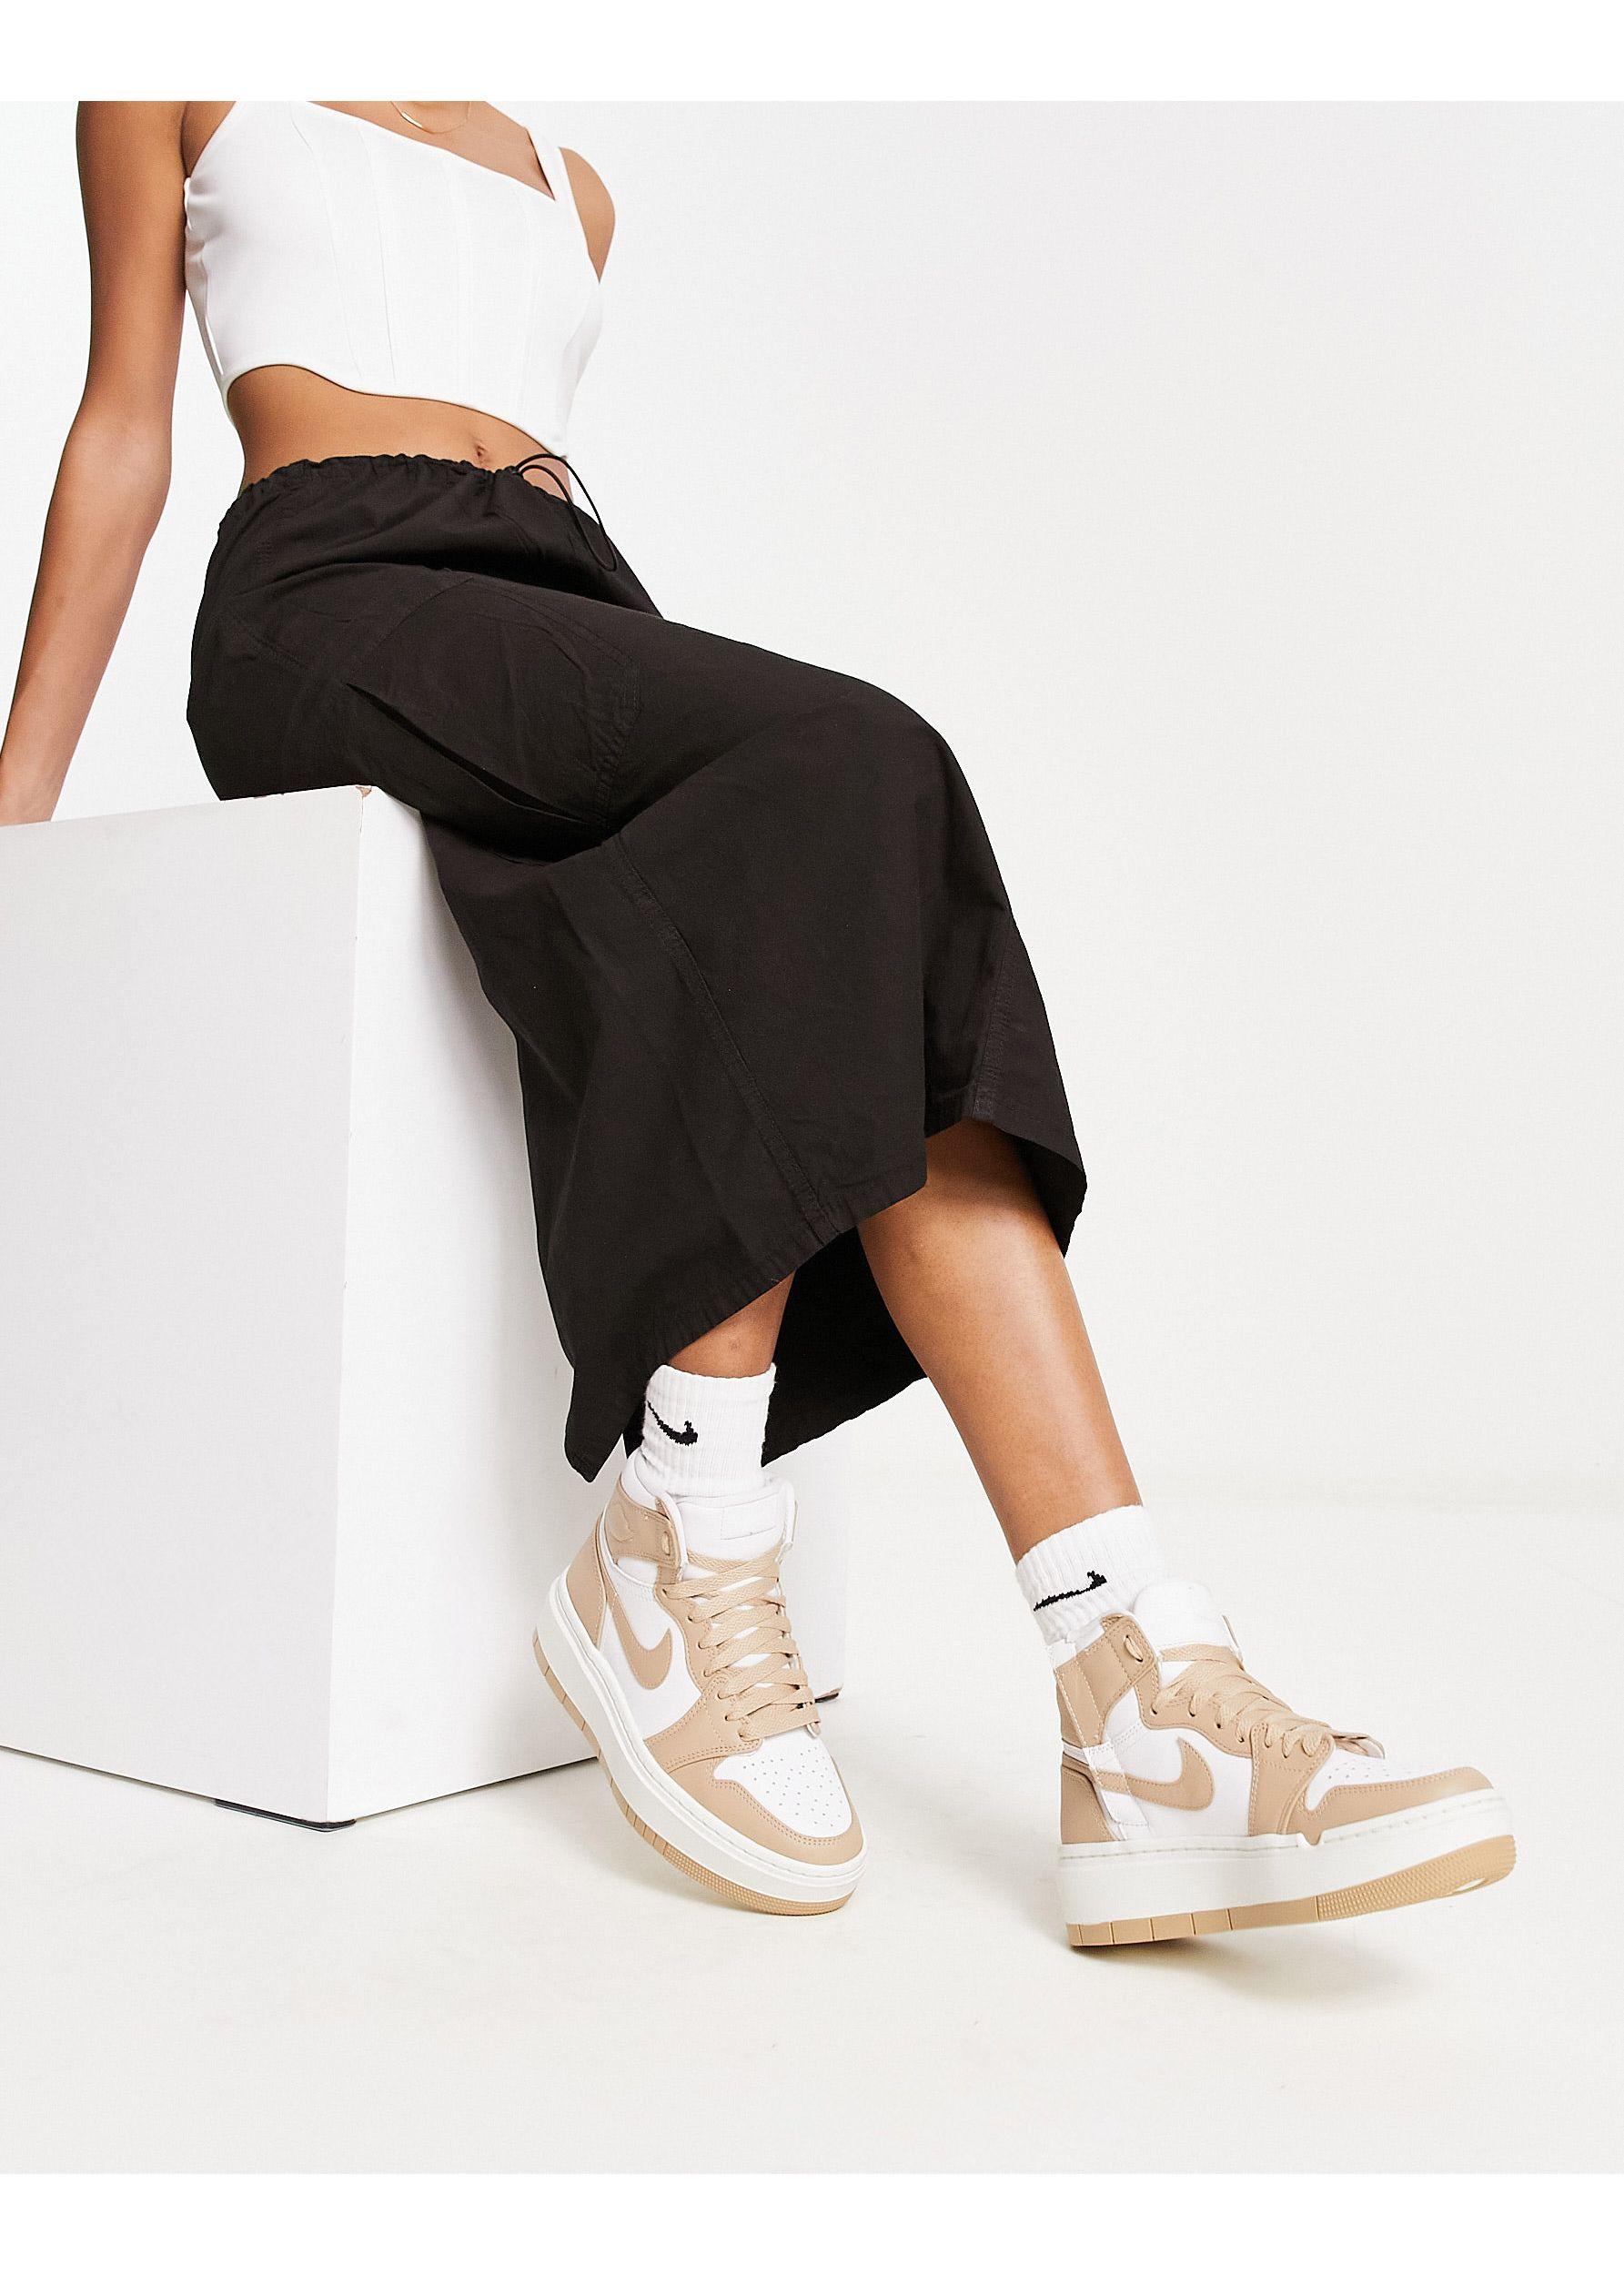 Nike Air Jordan 1 Elevate Mid Sneakers in Black and White-Multi